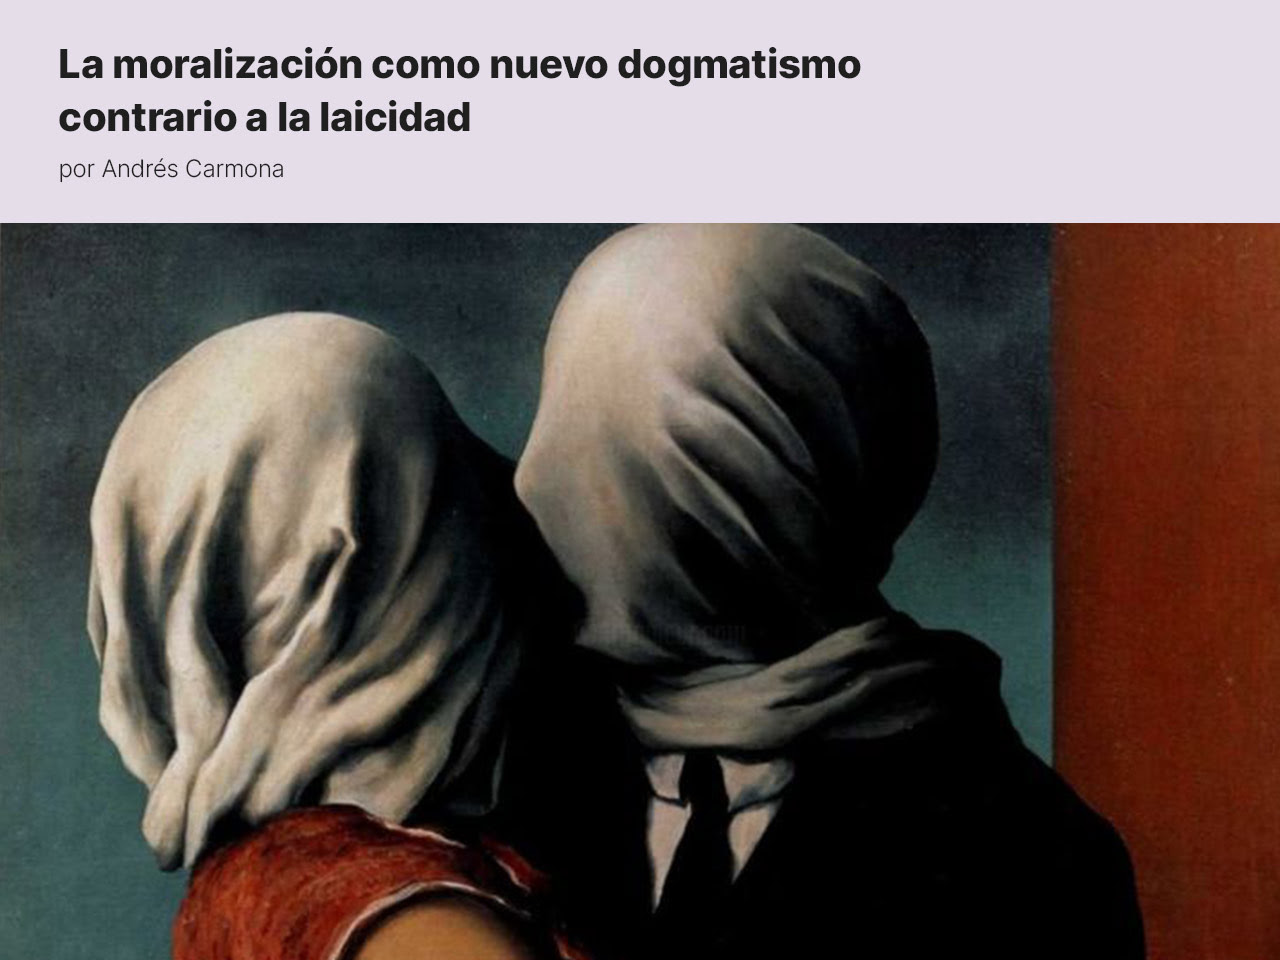 La moralización como nuevo dogmatismo contrario a la laicidad, por Andrés Carmona